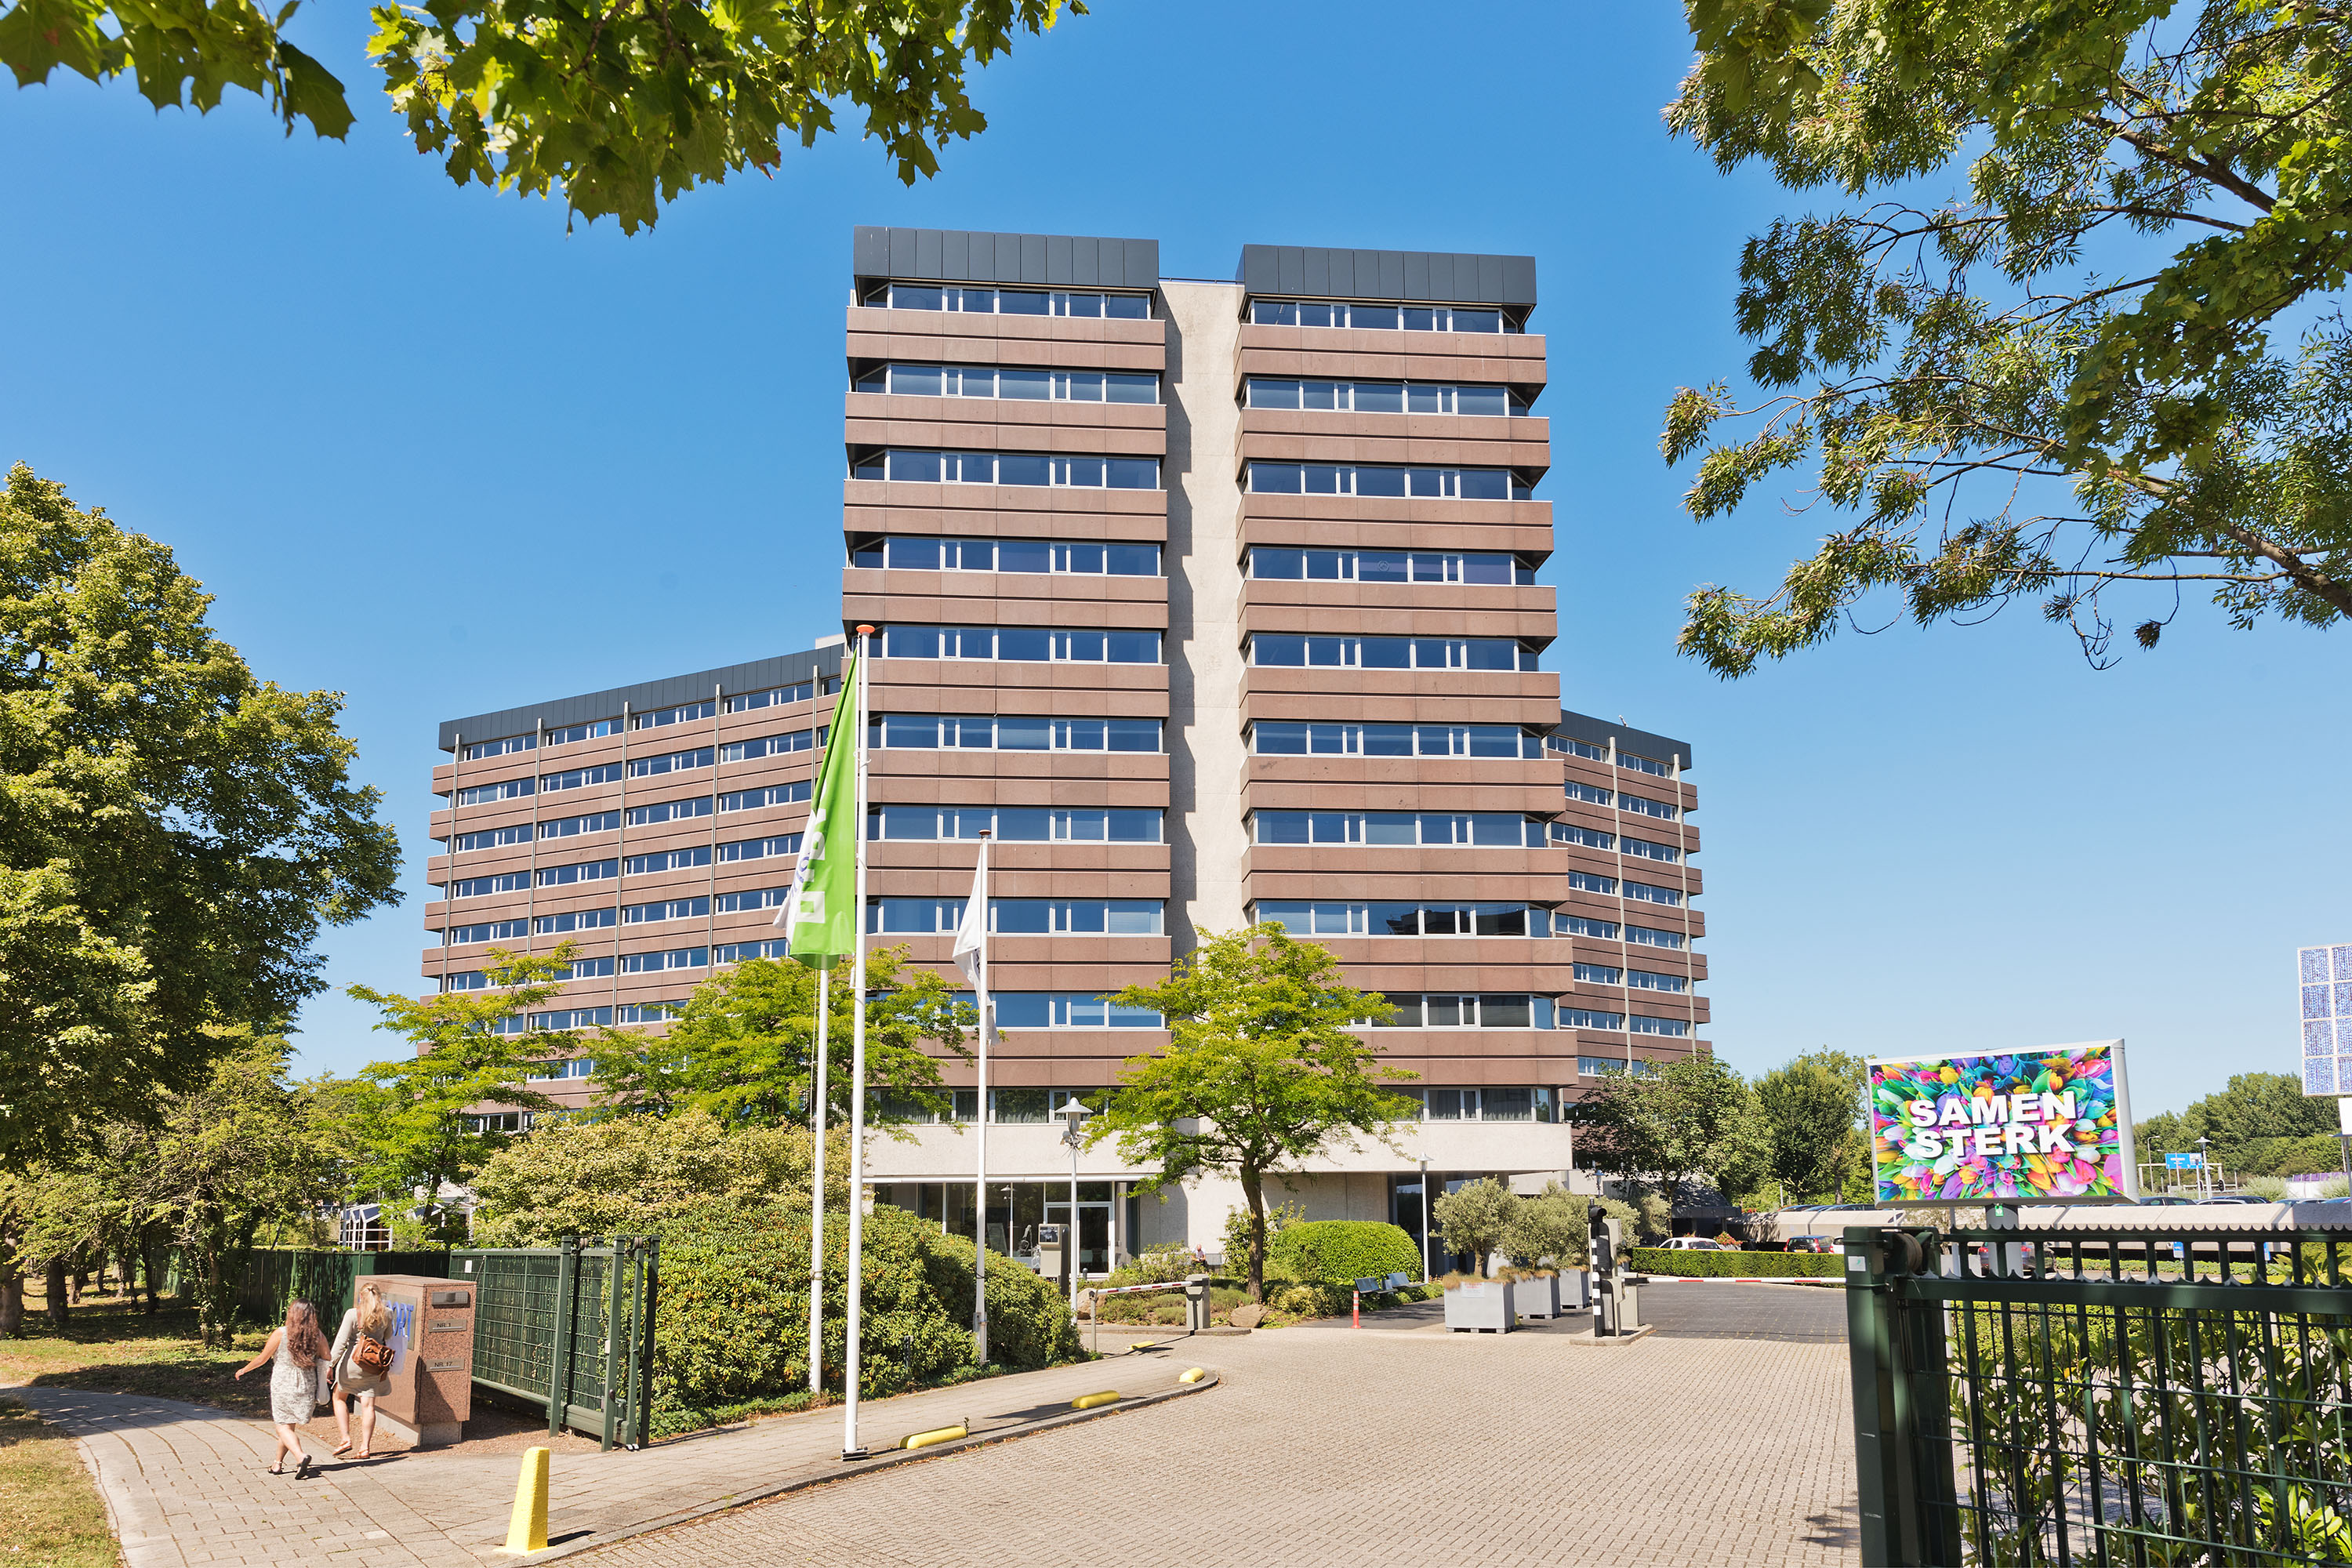 Vitens verhuist naar kantoorgebouw Rijnpoort in Arnhem